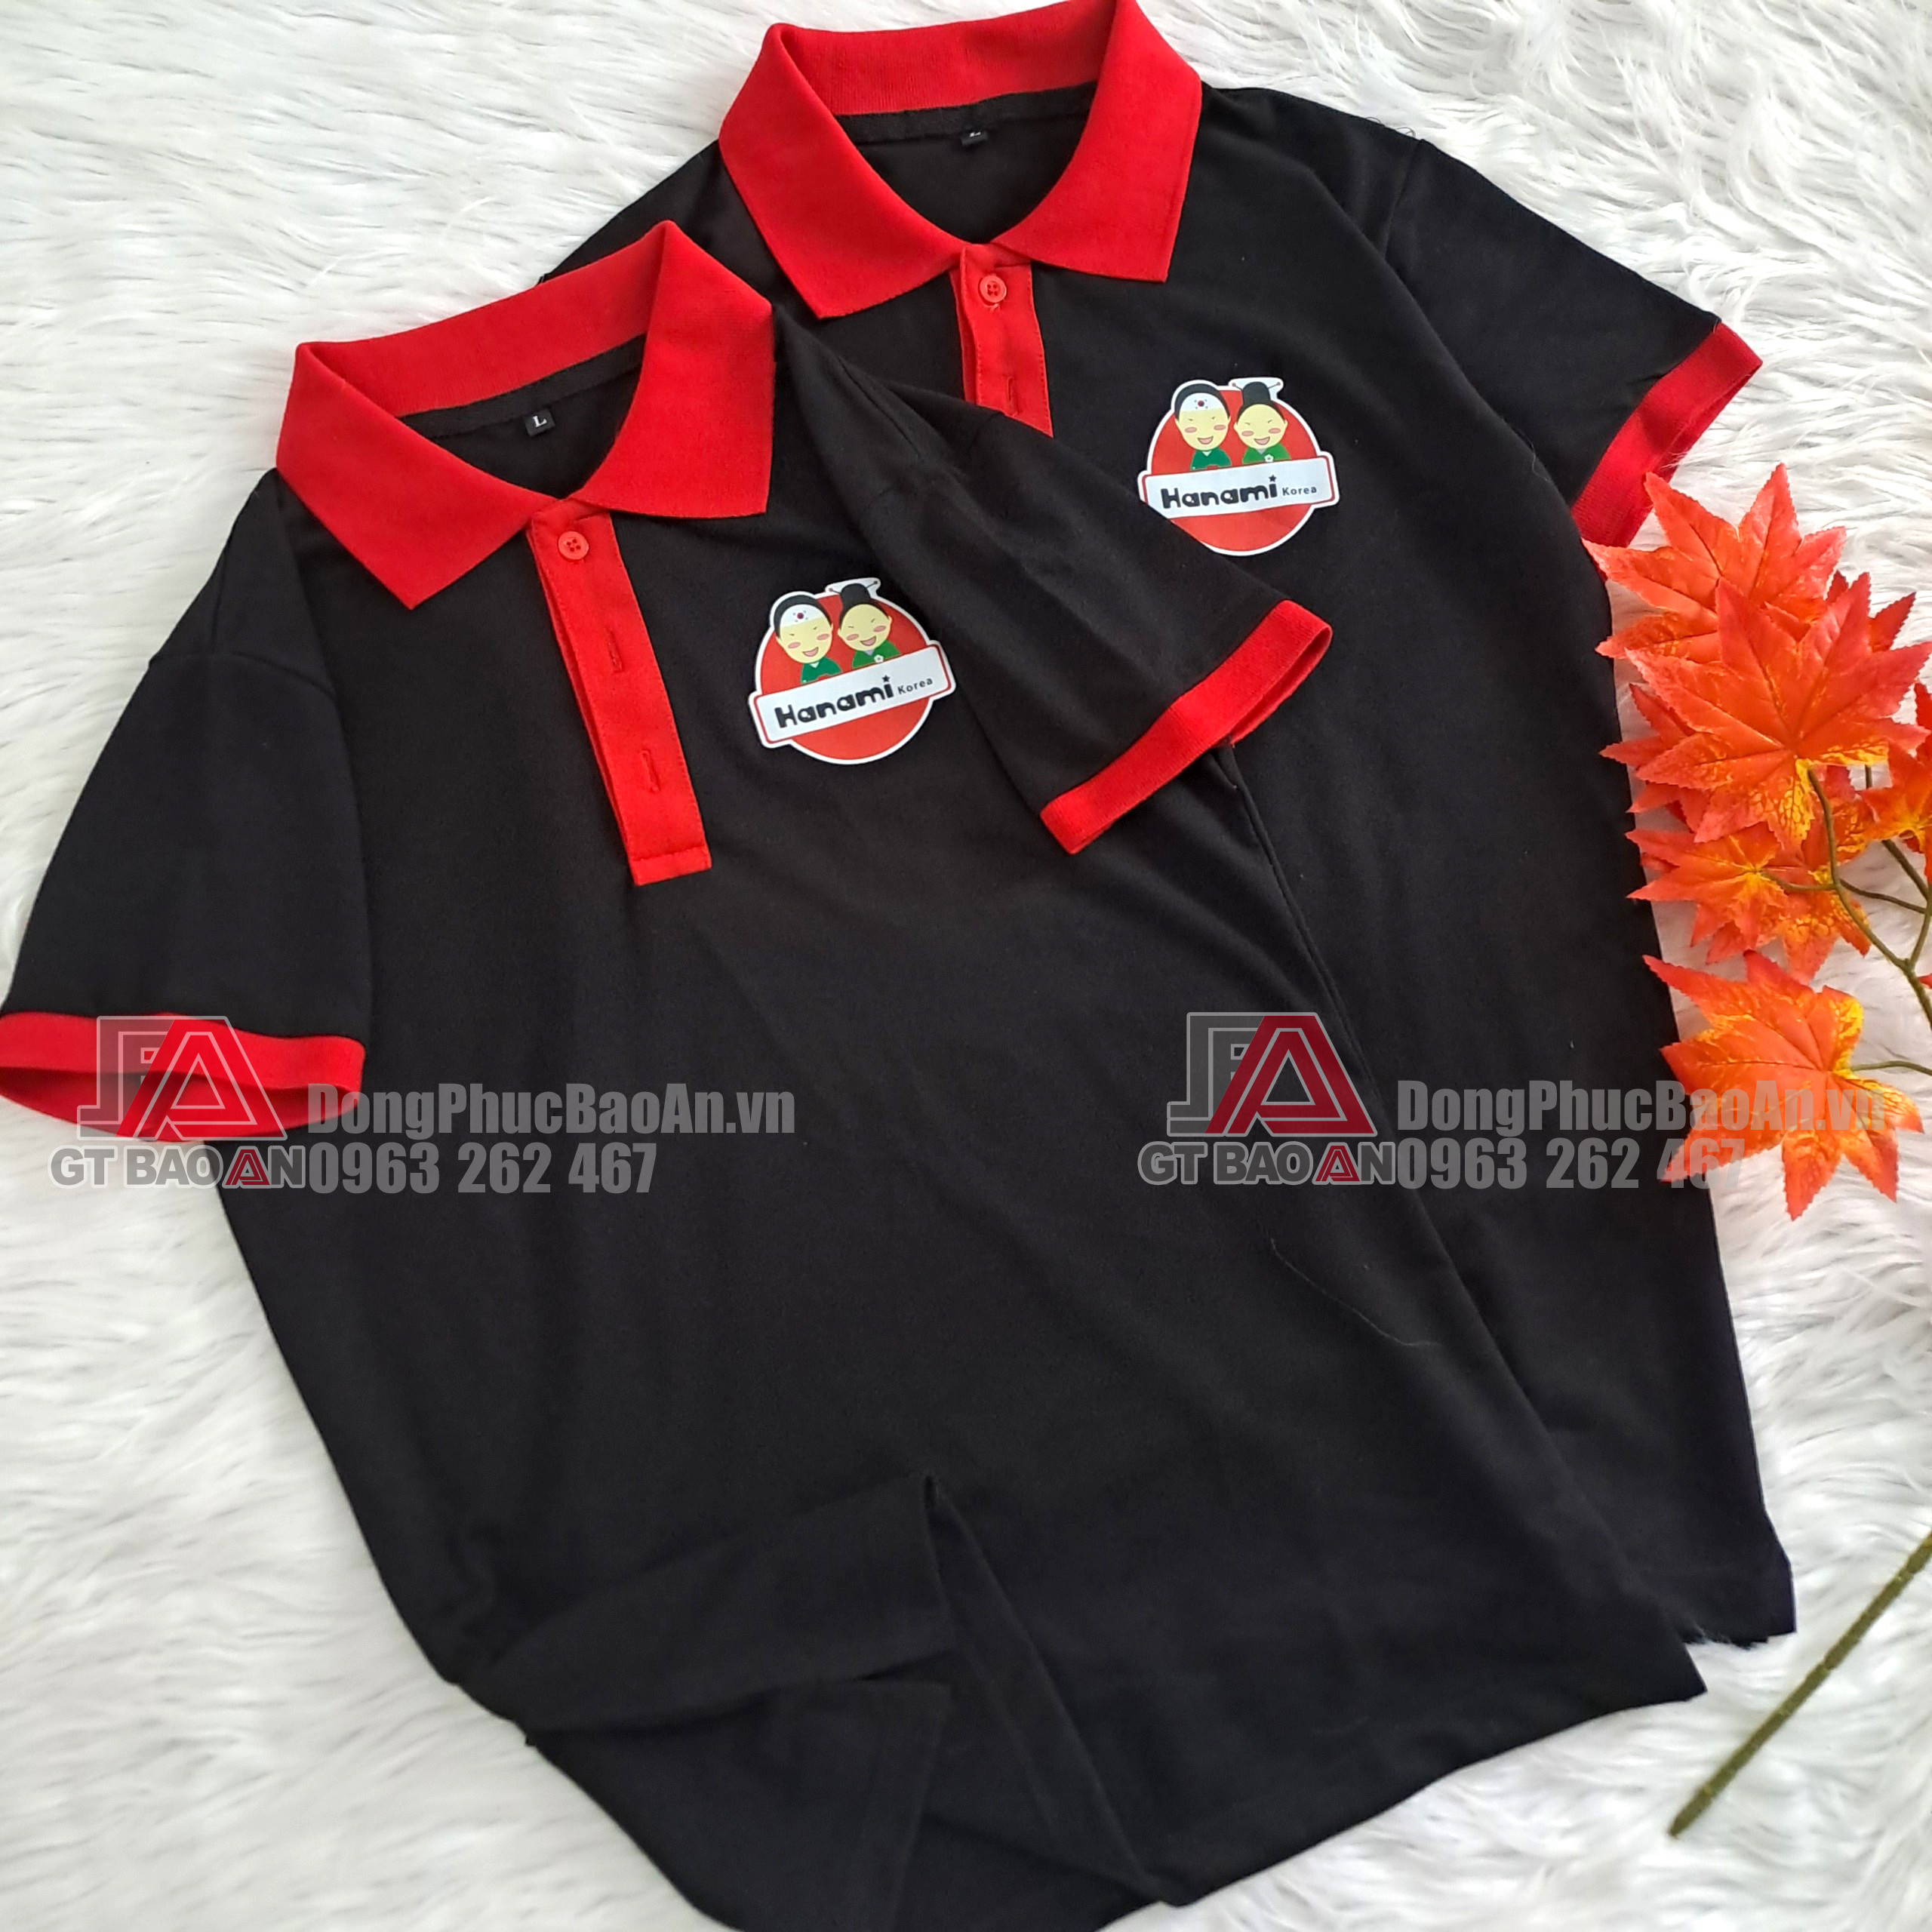 May áo thun nhân viên phục vụ đẹp có in logo giá tại xưởng TPHCM - HANAMI Lẩu mì cay Hàn Quốc